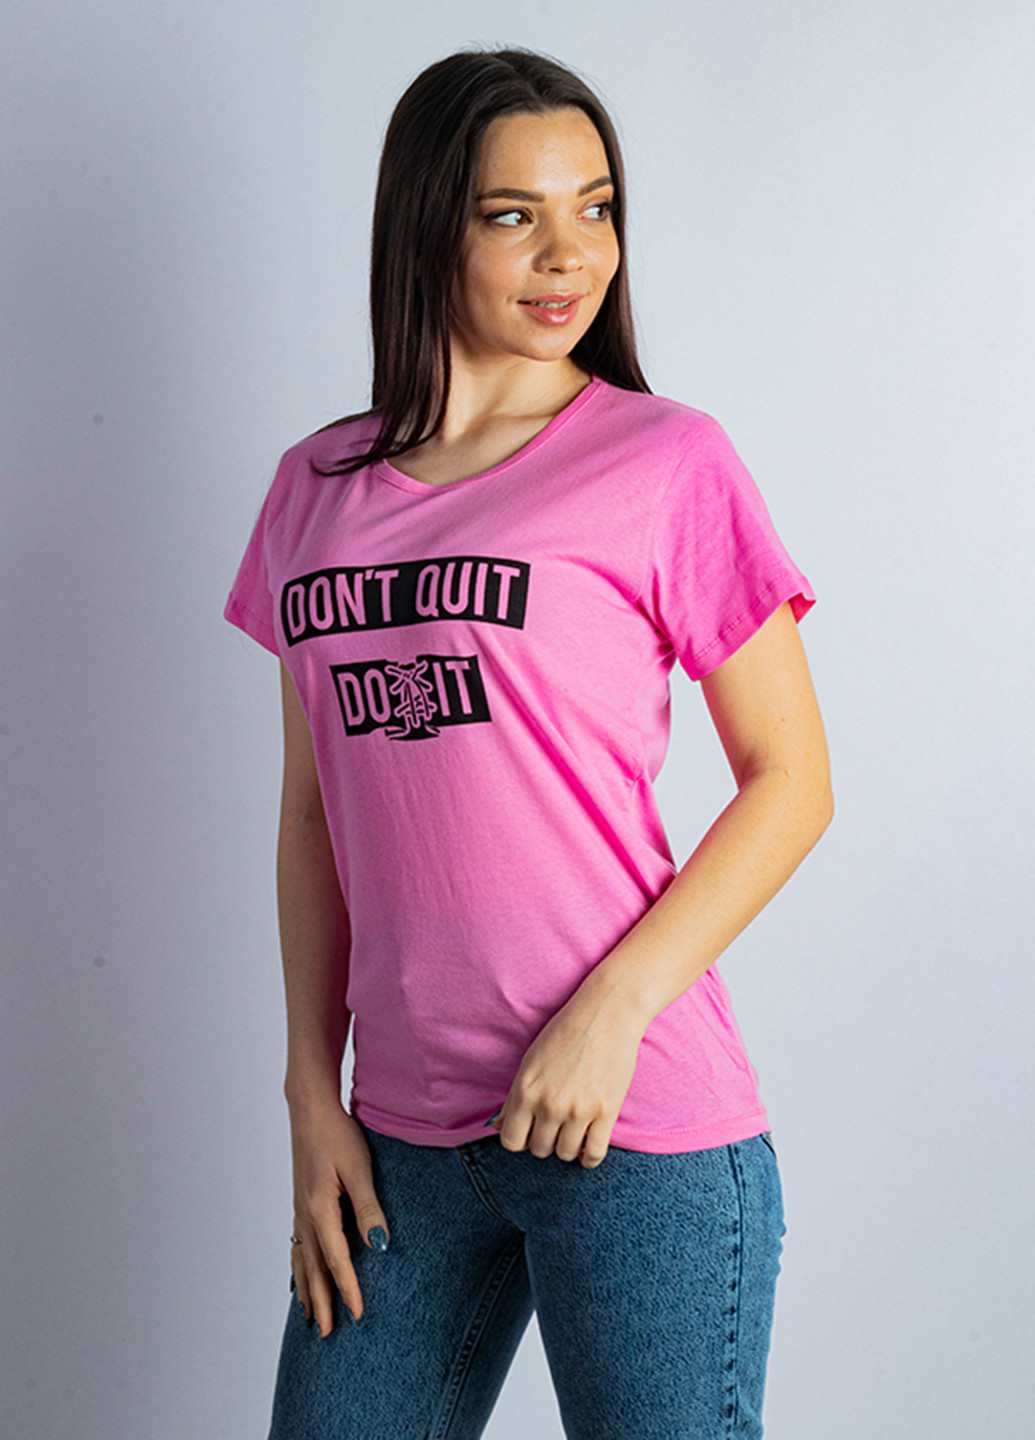 Розовая летняя футболка Time of Style